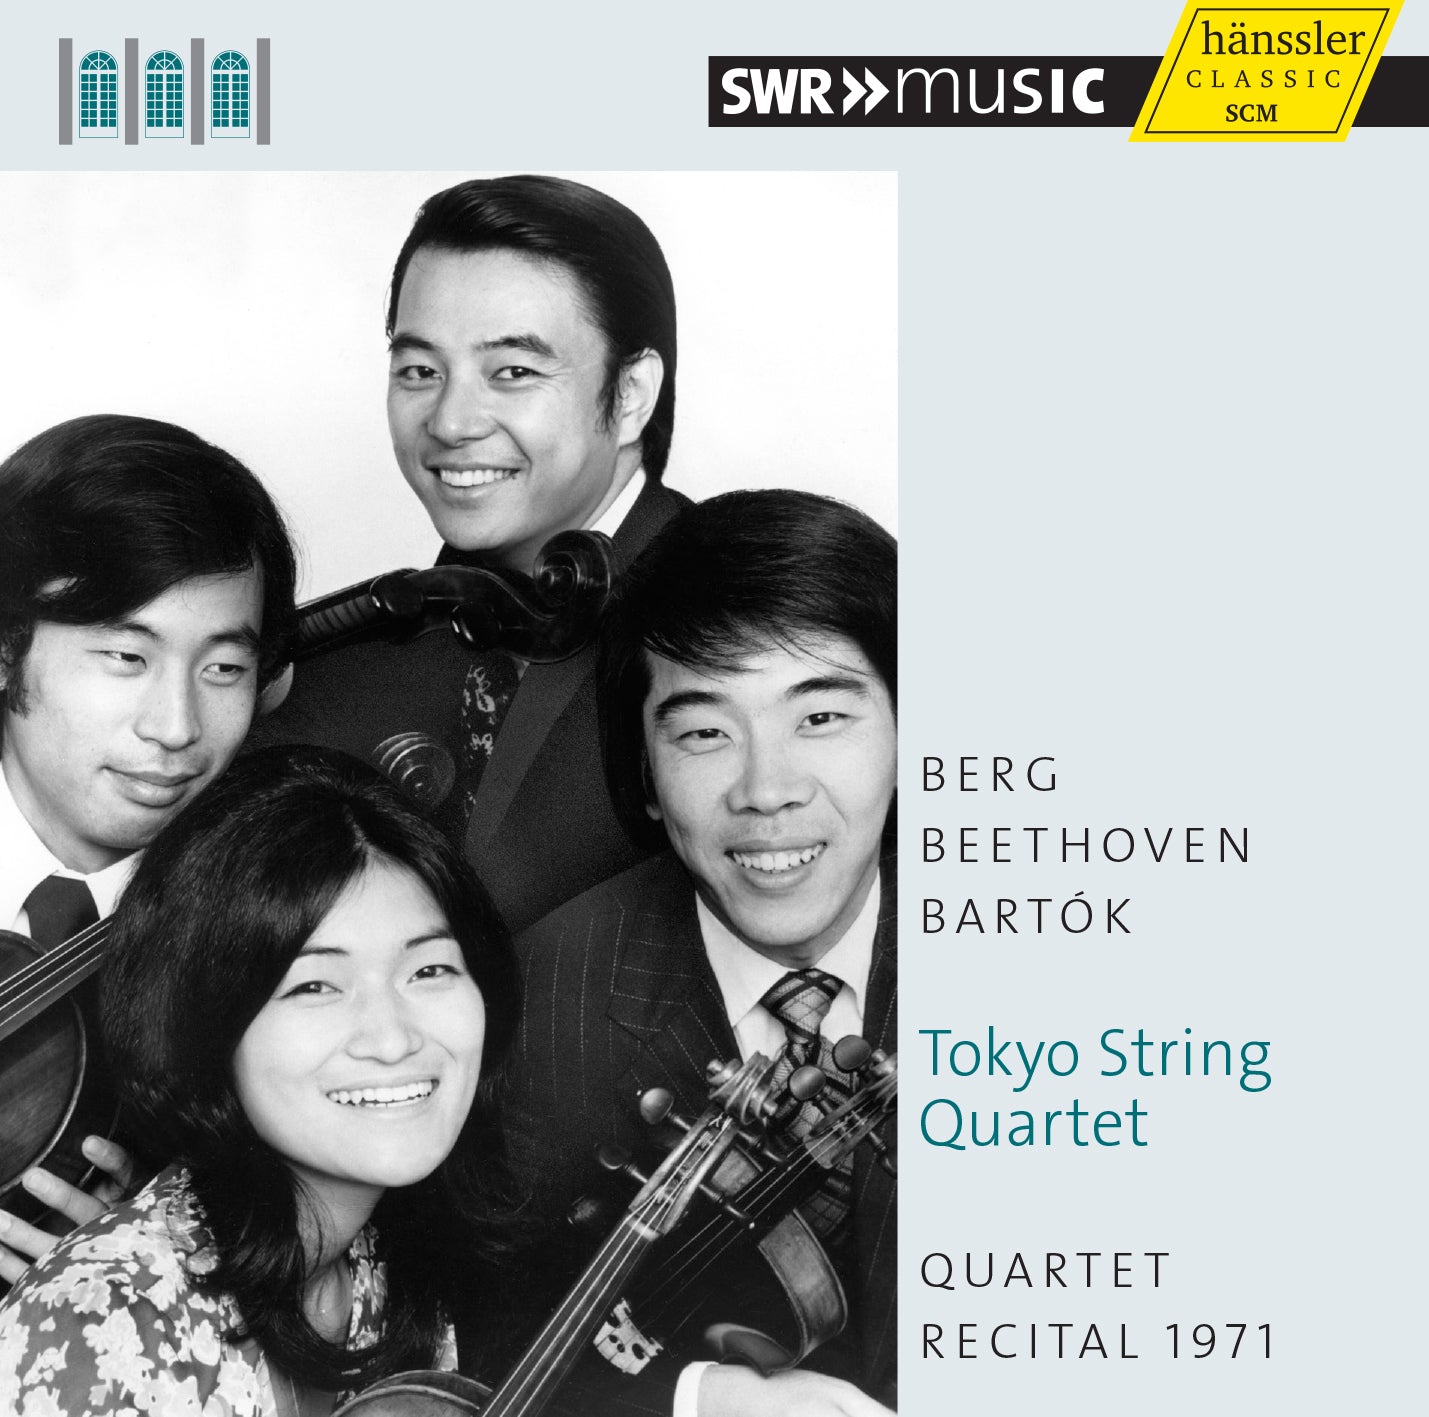 Beethoven, Bartók, Berg: Quartet Recital 1971 / Tokyo String Quartet